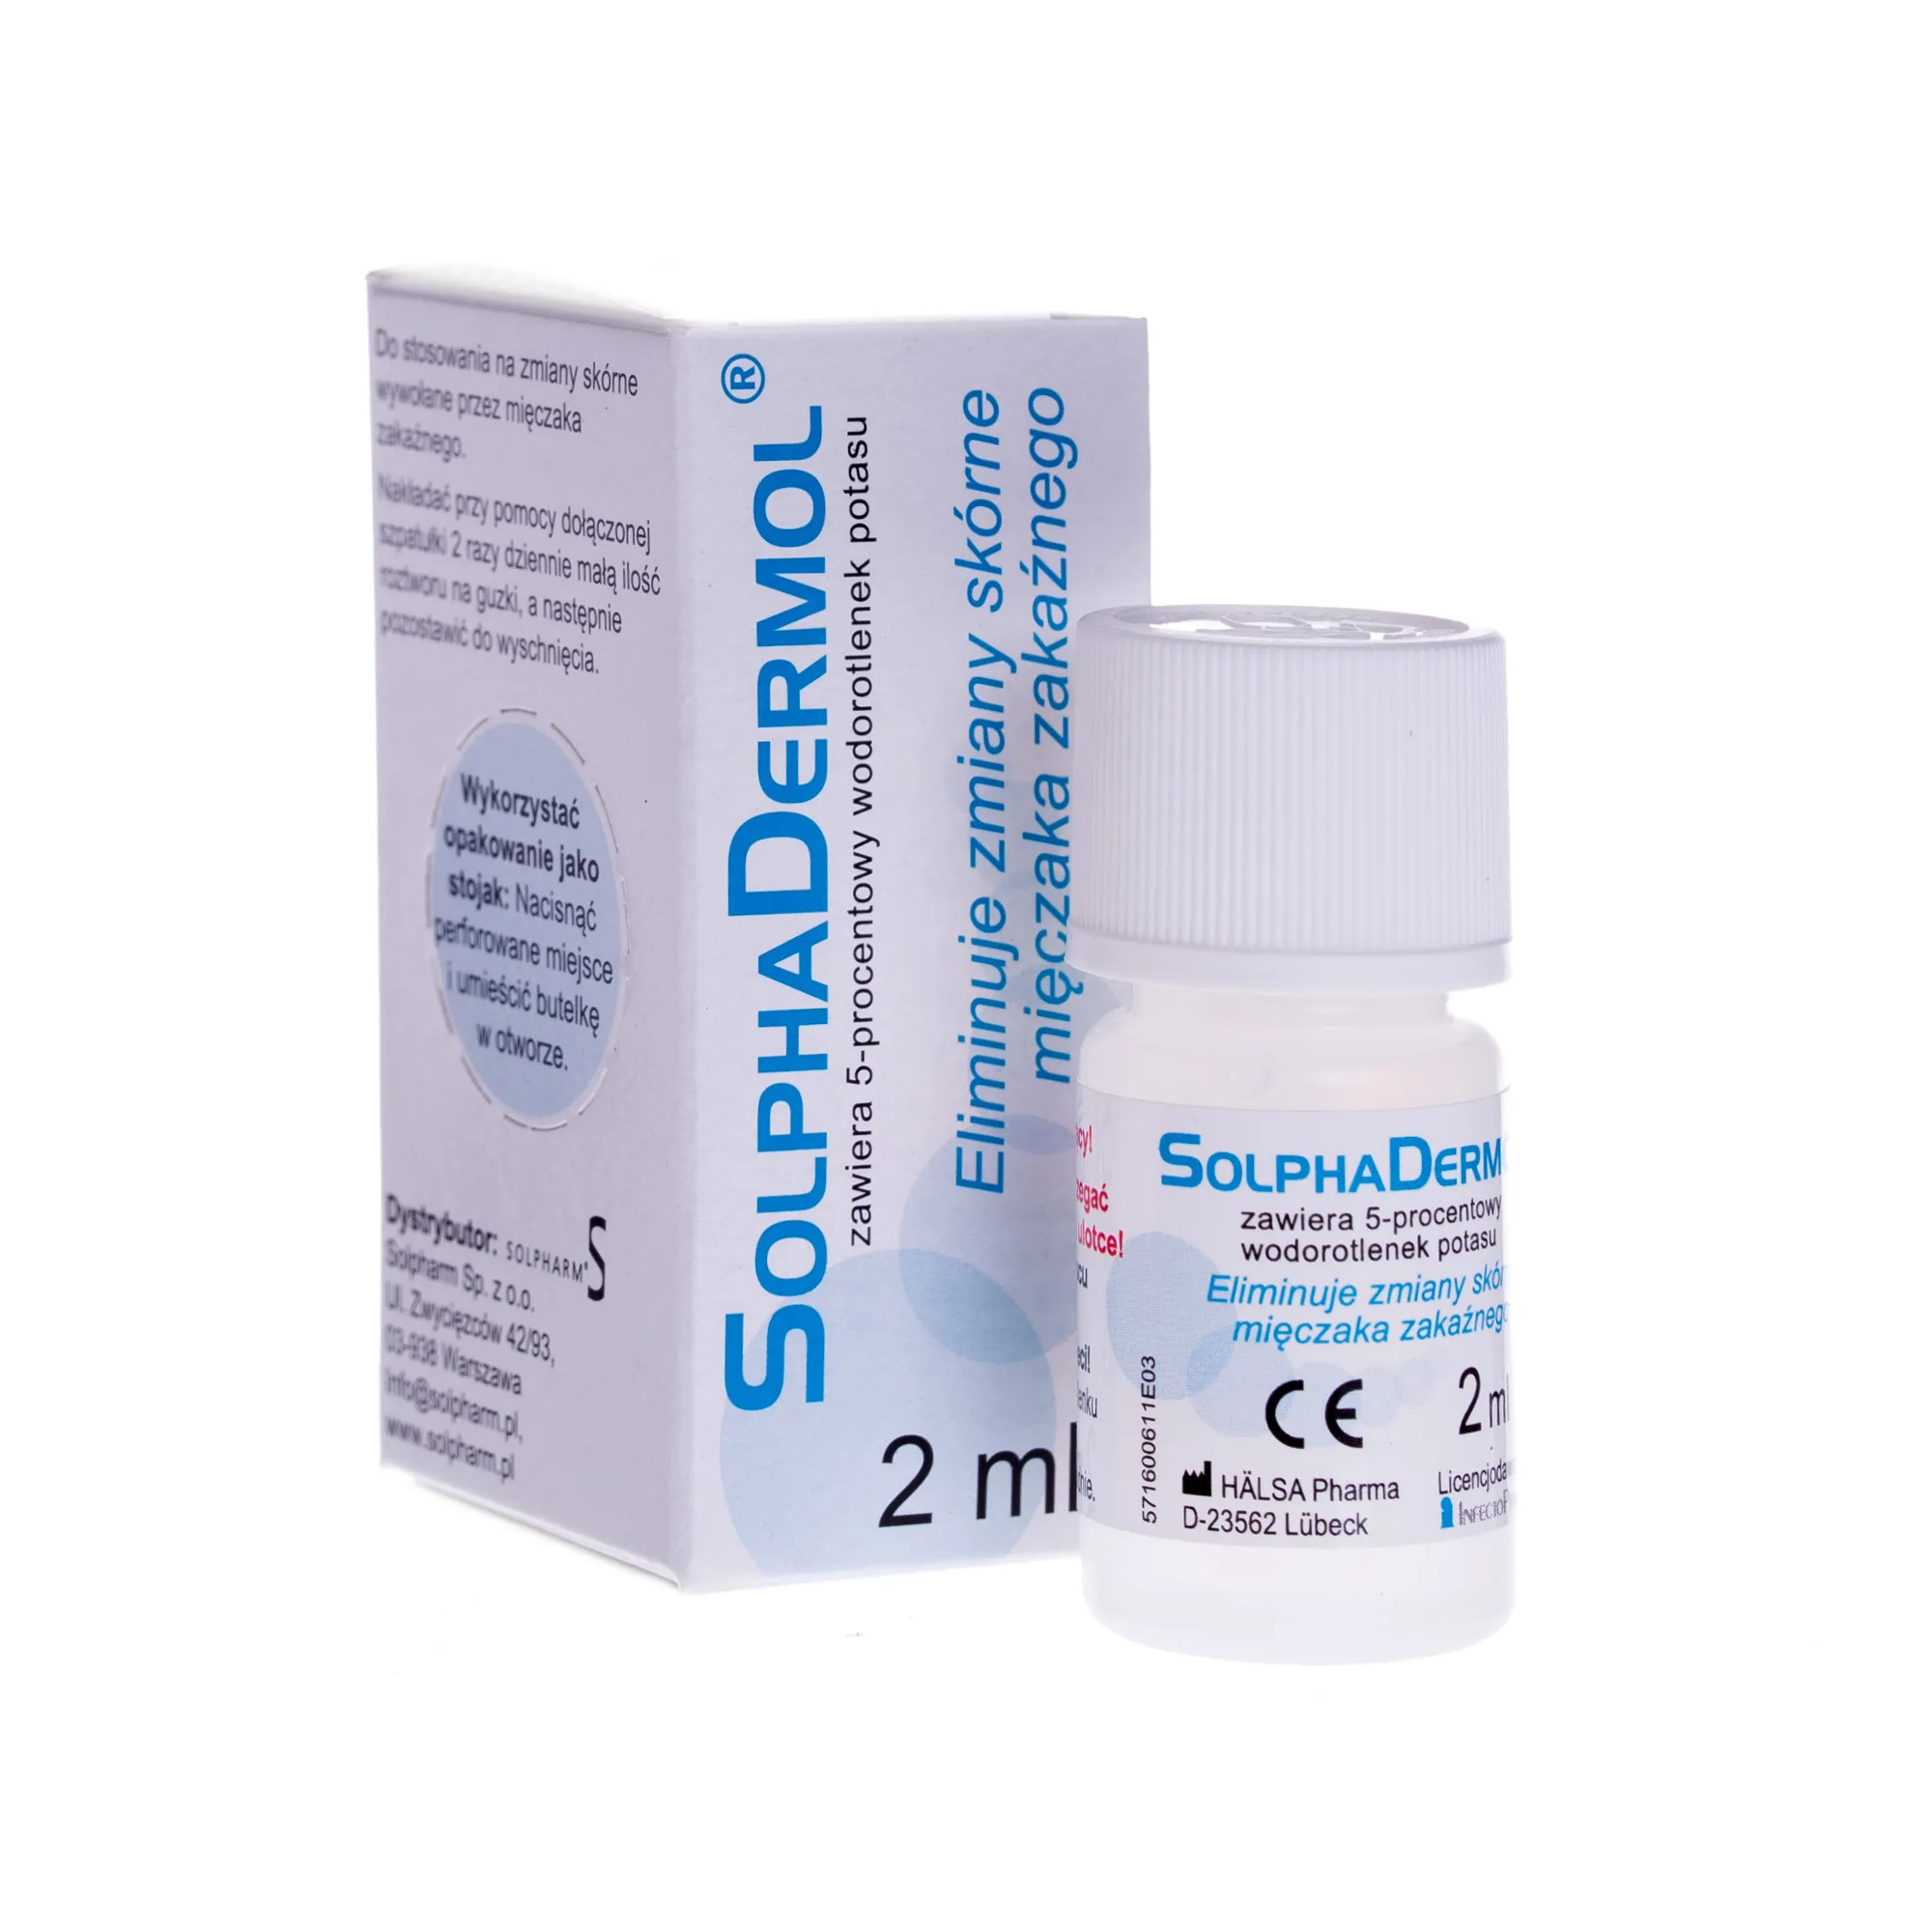 SolphaDermol, eliminuje zmiany skórne mięczaka zakaźnego, 2 ml 